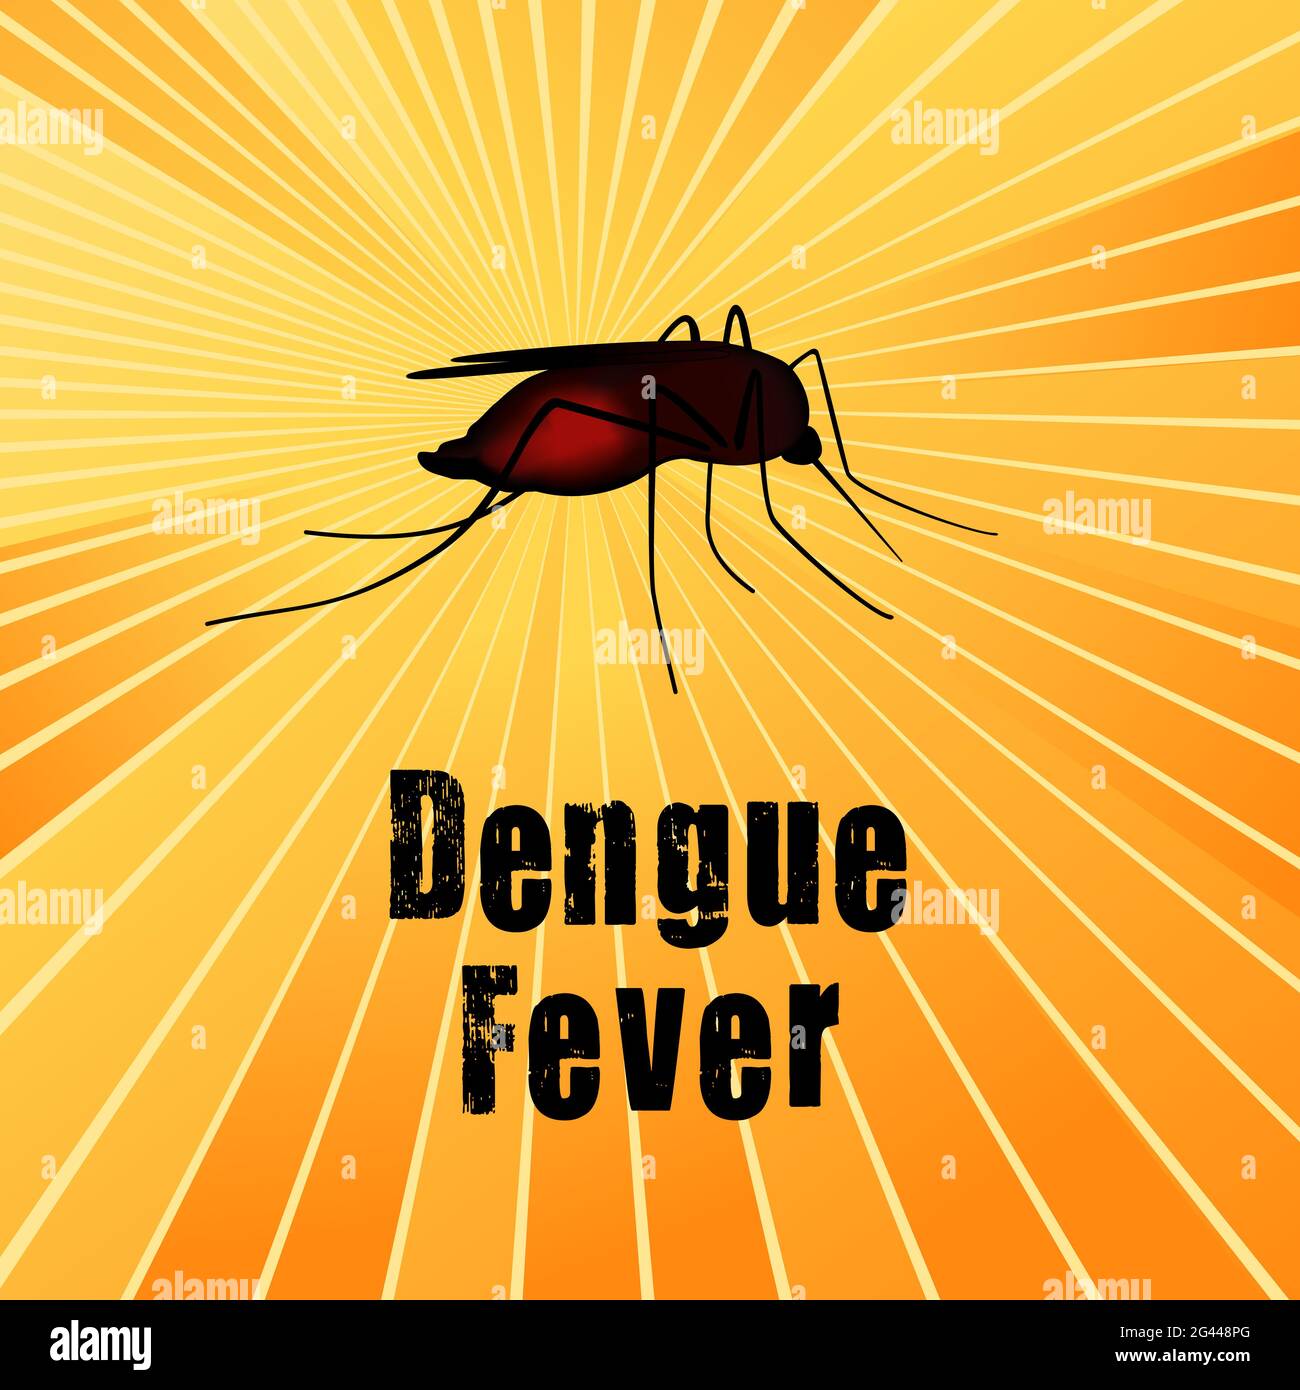 Febbre dengue, zanzara, insetto morbillo riempito di sangue, rischio per la salute pubblica, vettore di malattie infettive su sfondo oro raggi solari Foto Stock